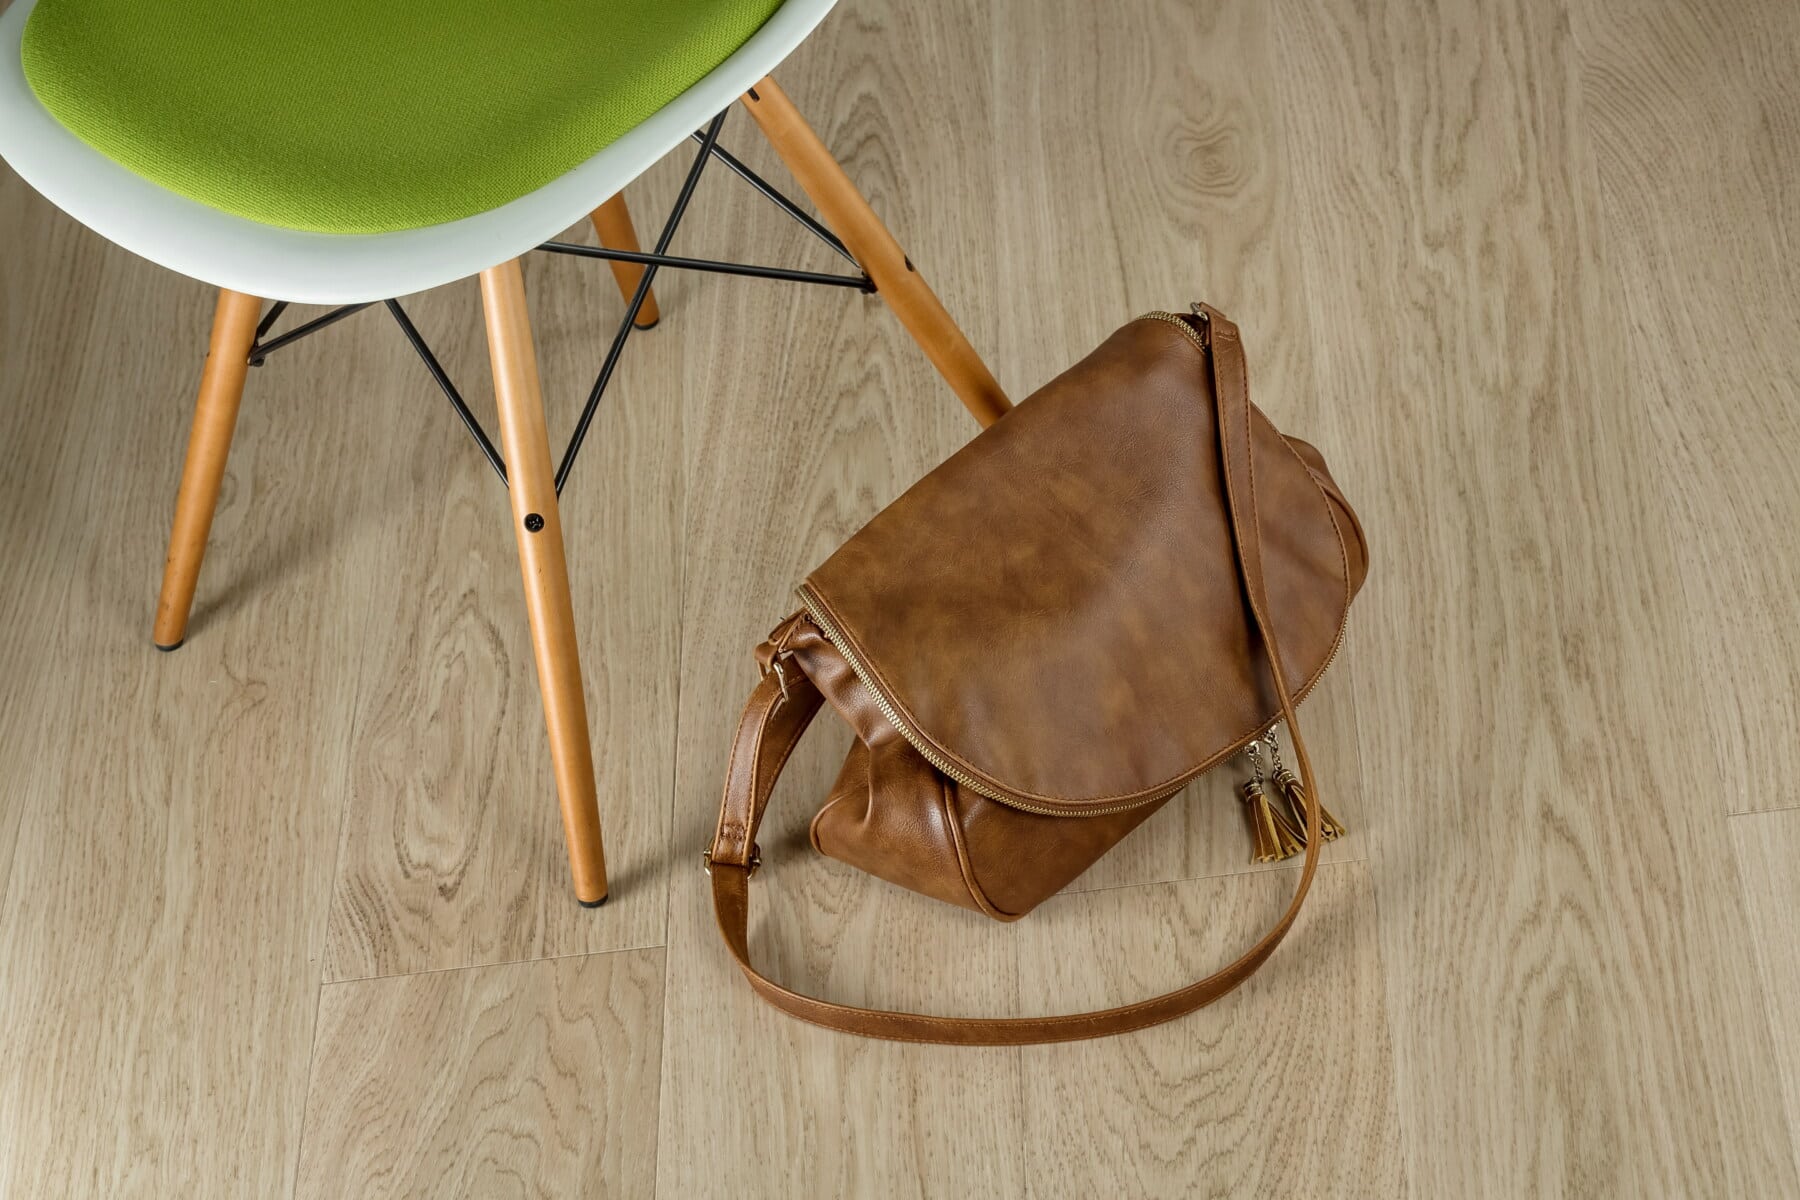 bolso, equipaje, cuero, marrón, marrón claro, asiento, madera, silla, retro, madera